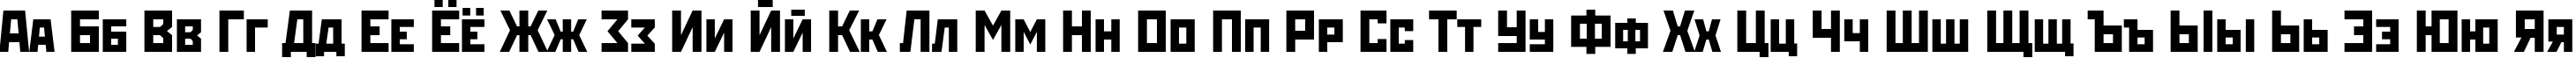 Пример написания русского алфавита шрифтом StenbergITC